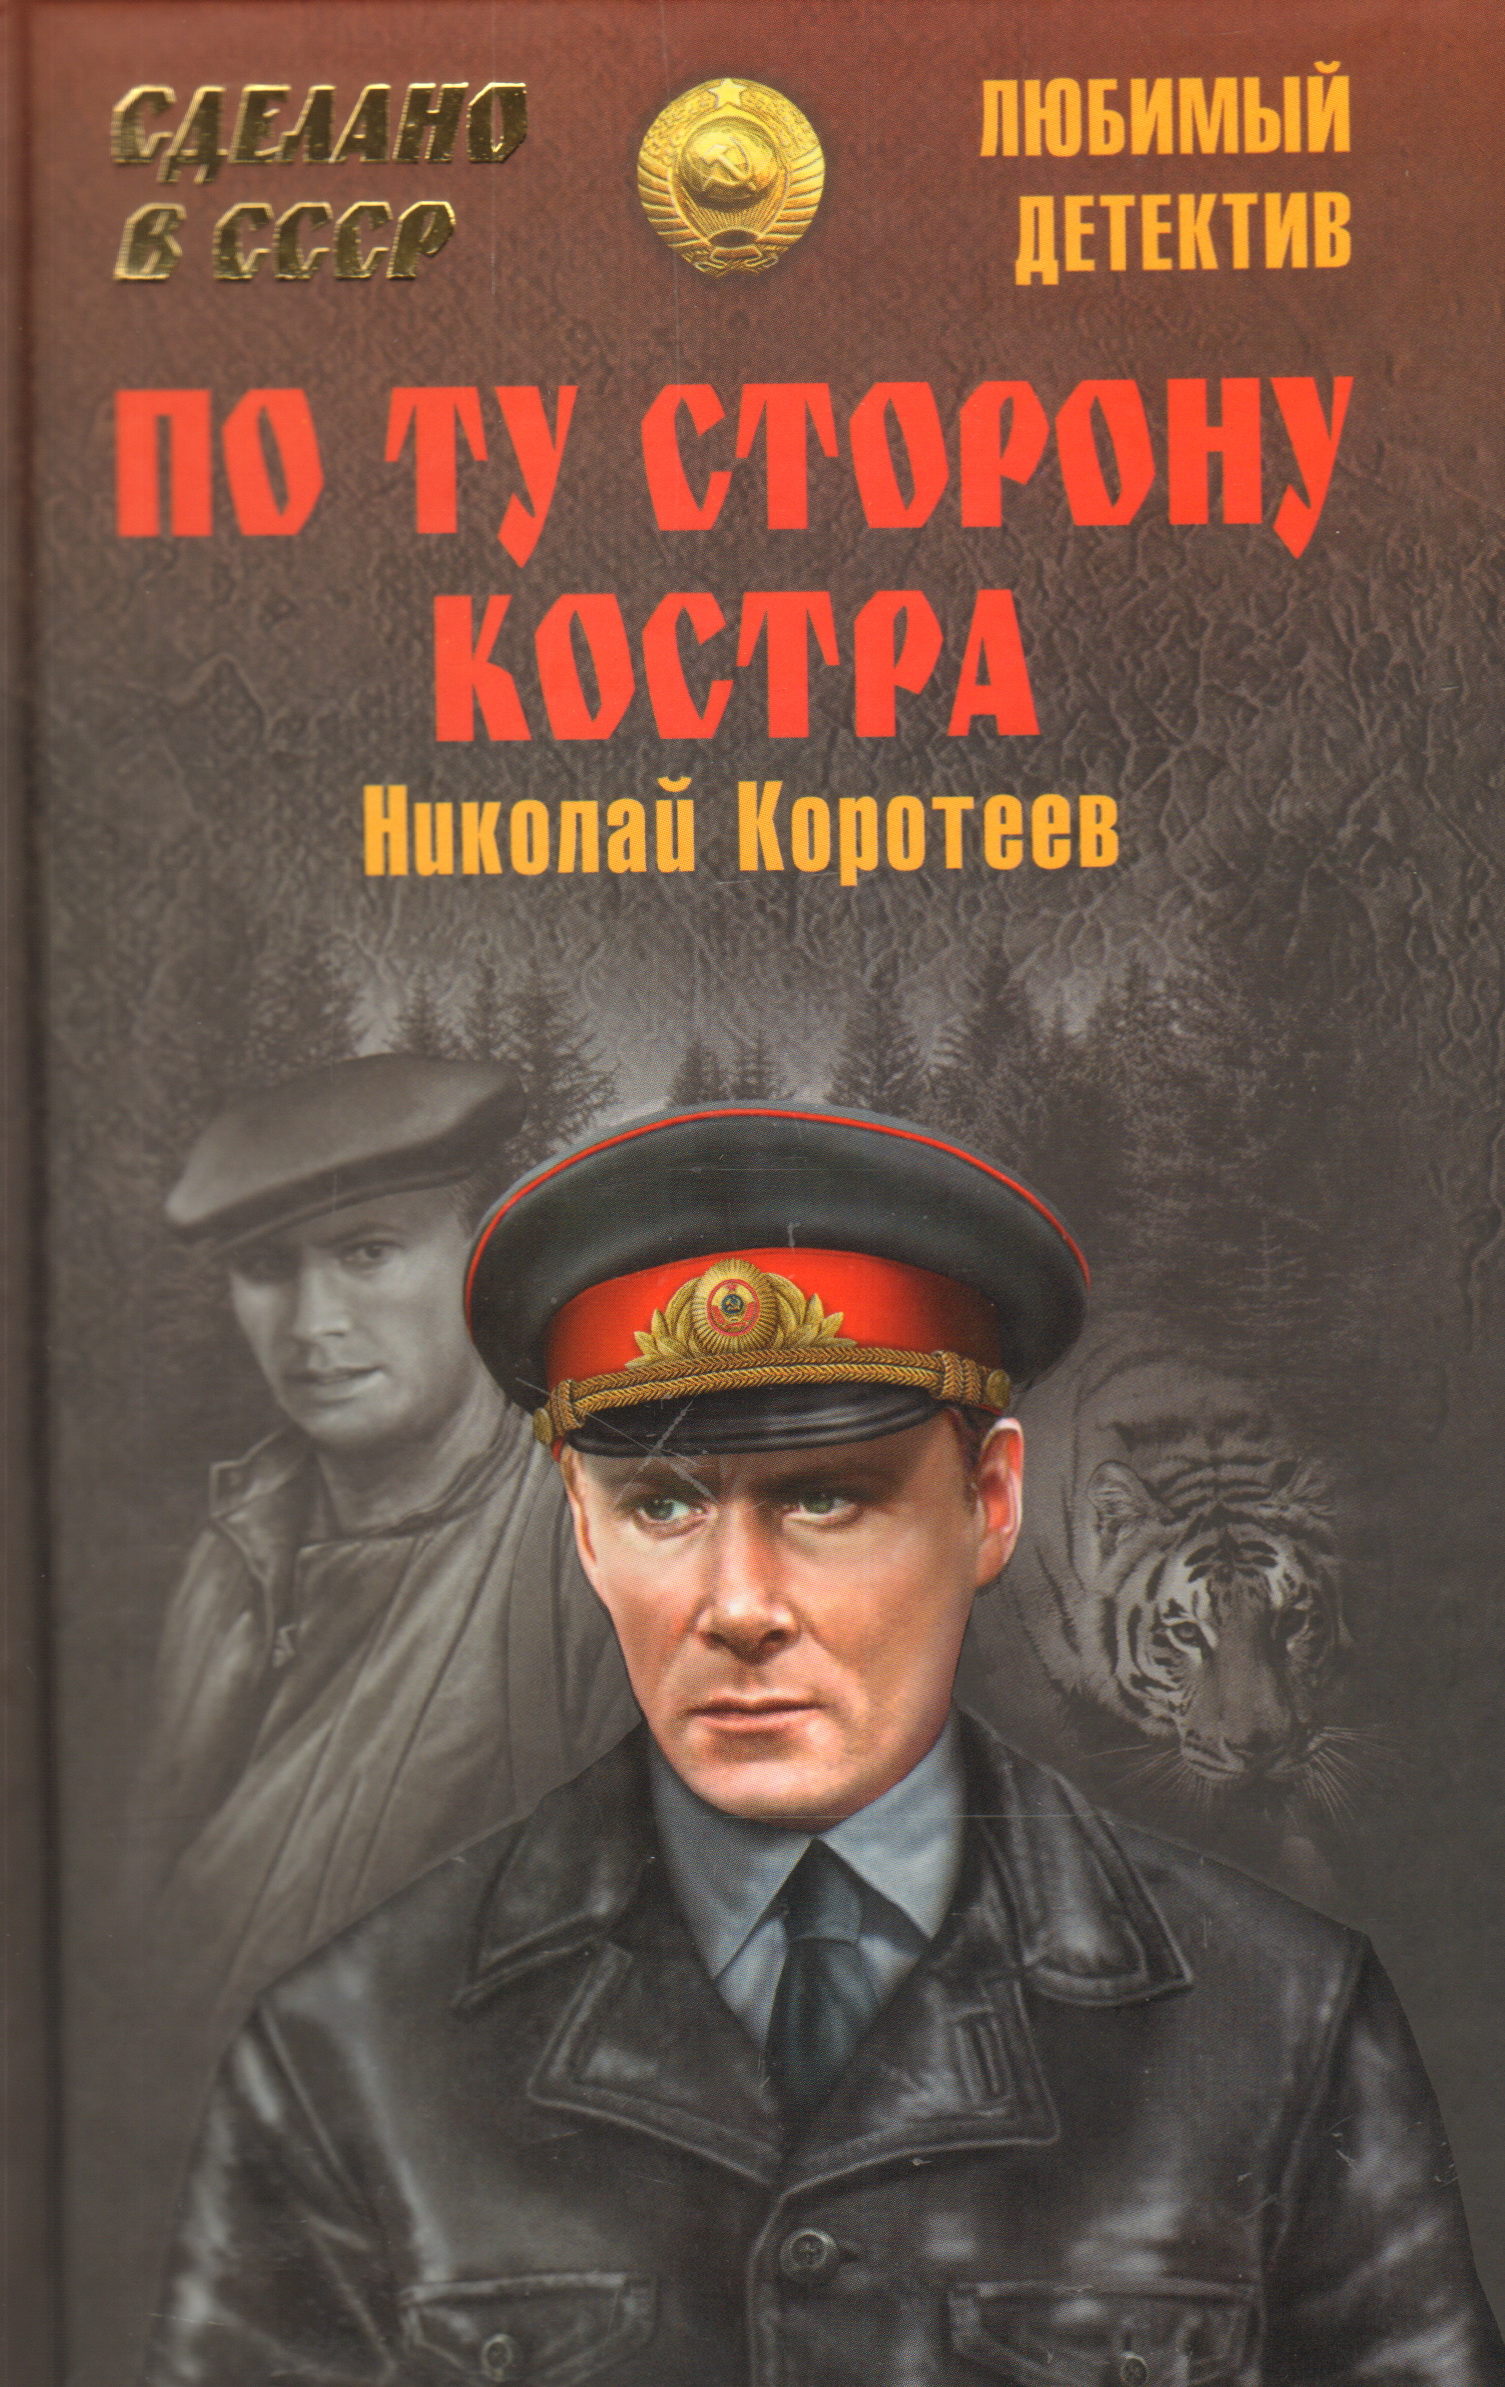 Читать книги про. Советские детективы. Советские Художественные книги. Книги жанра детективы. Советские детективные книги.